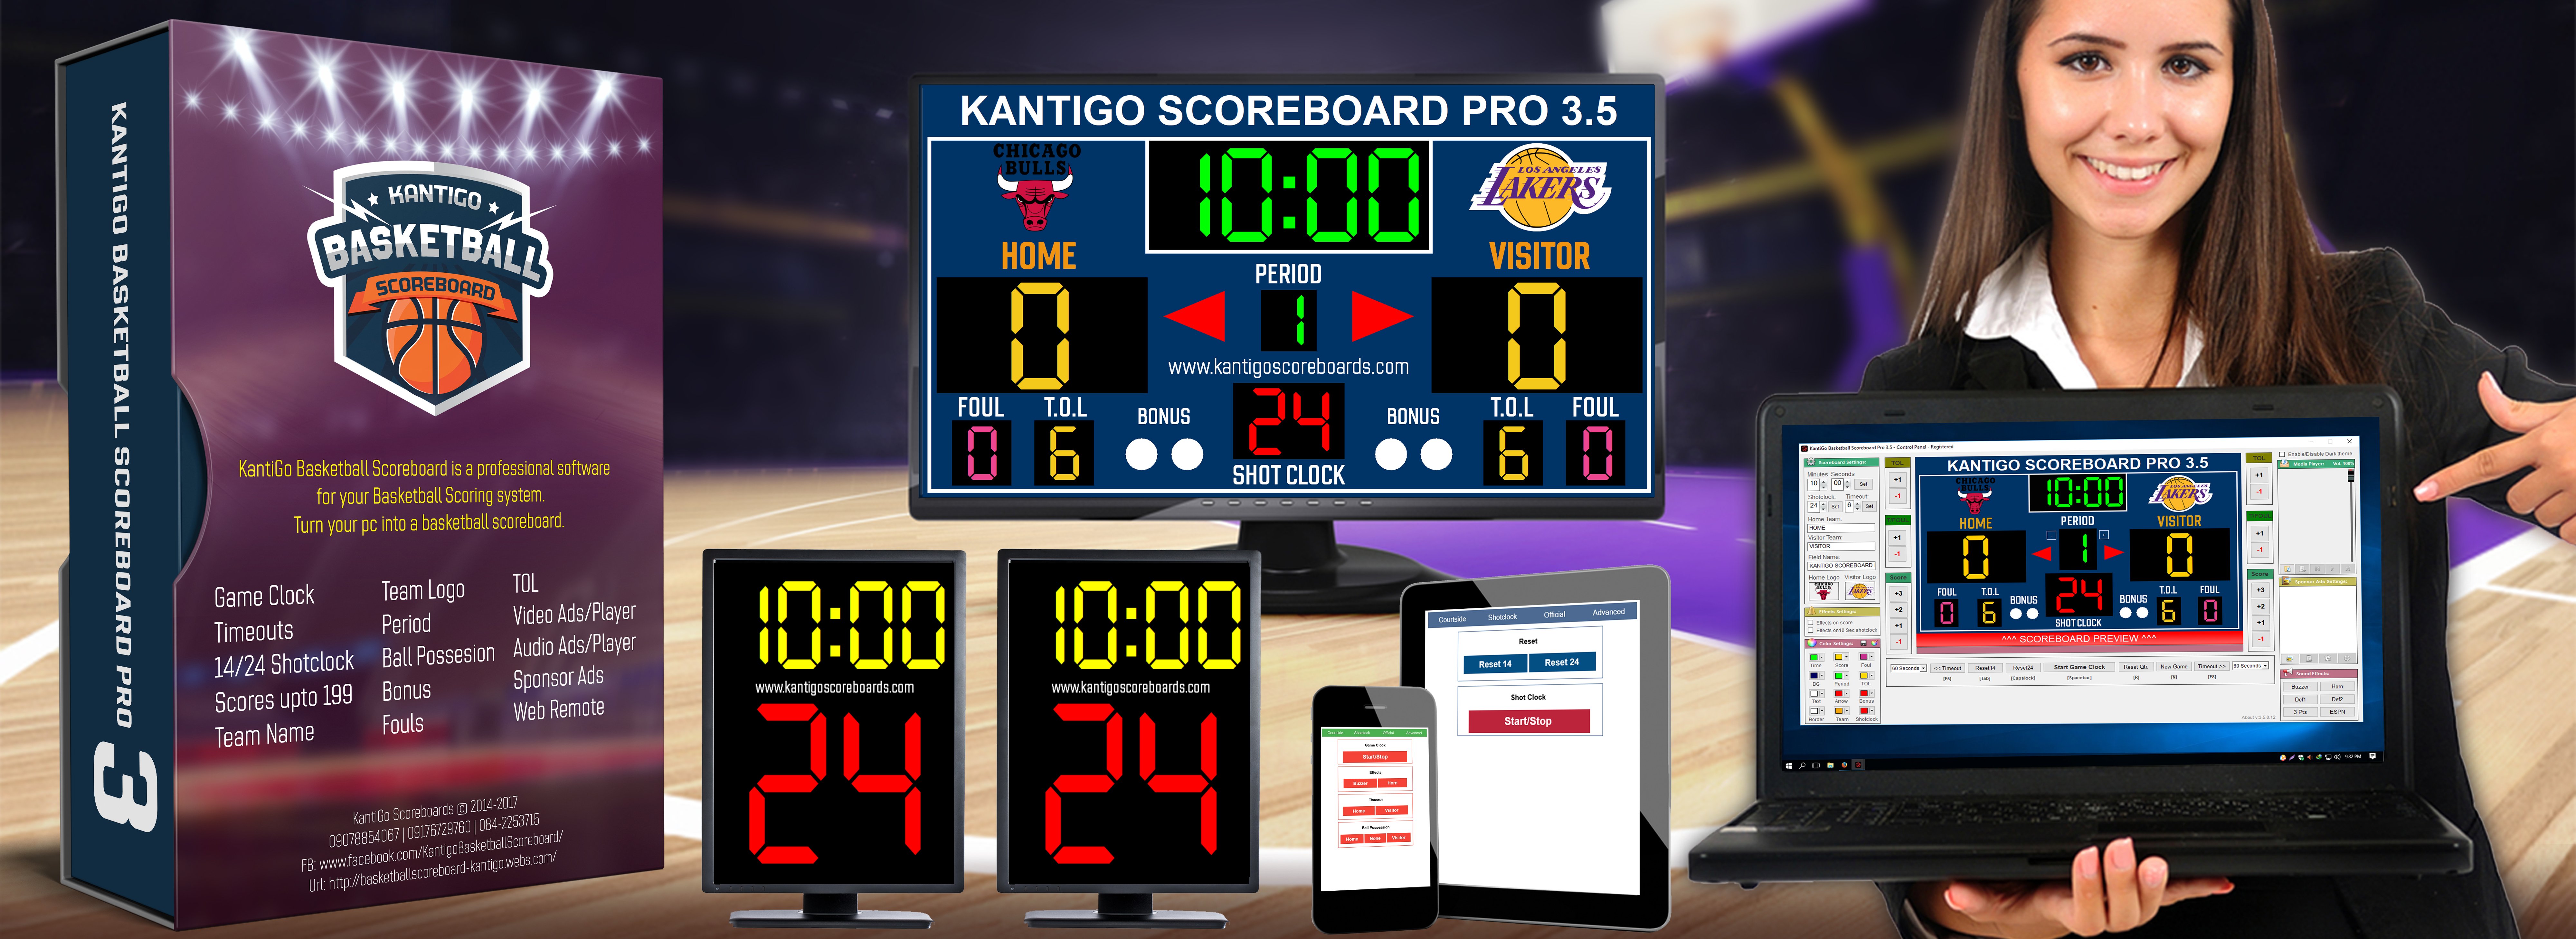 basketball scoreboard standard 2.0.4 serial key